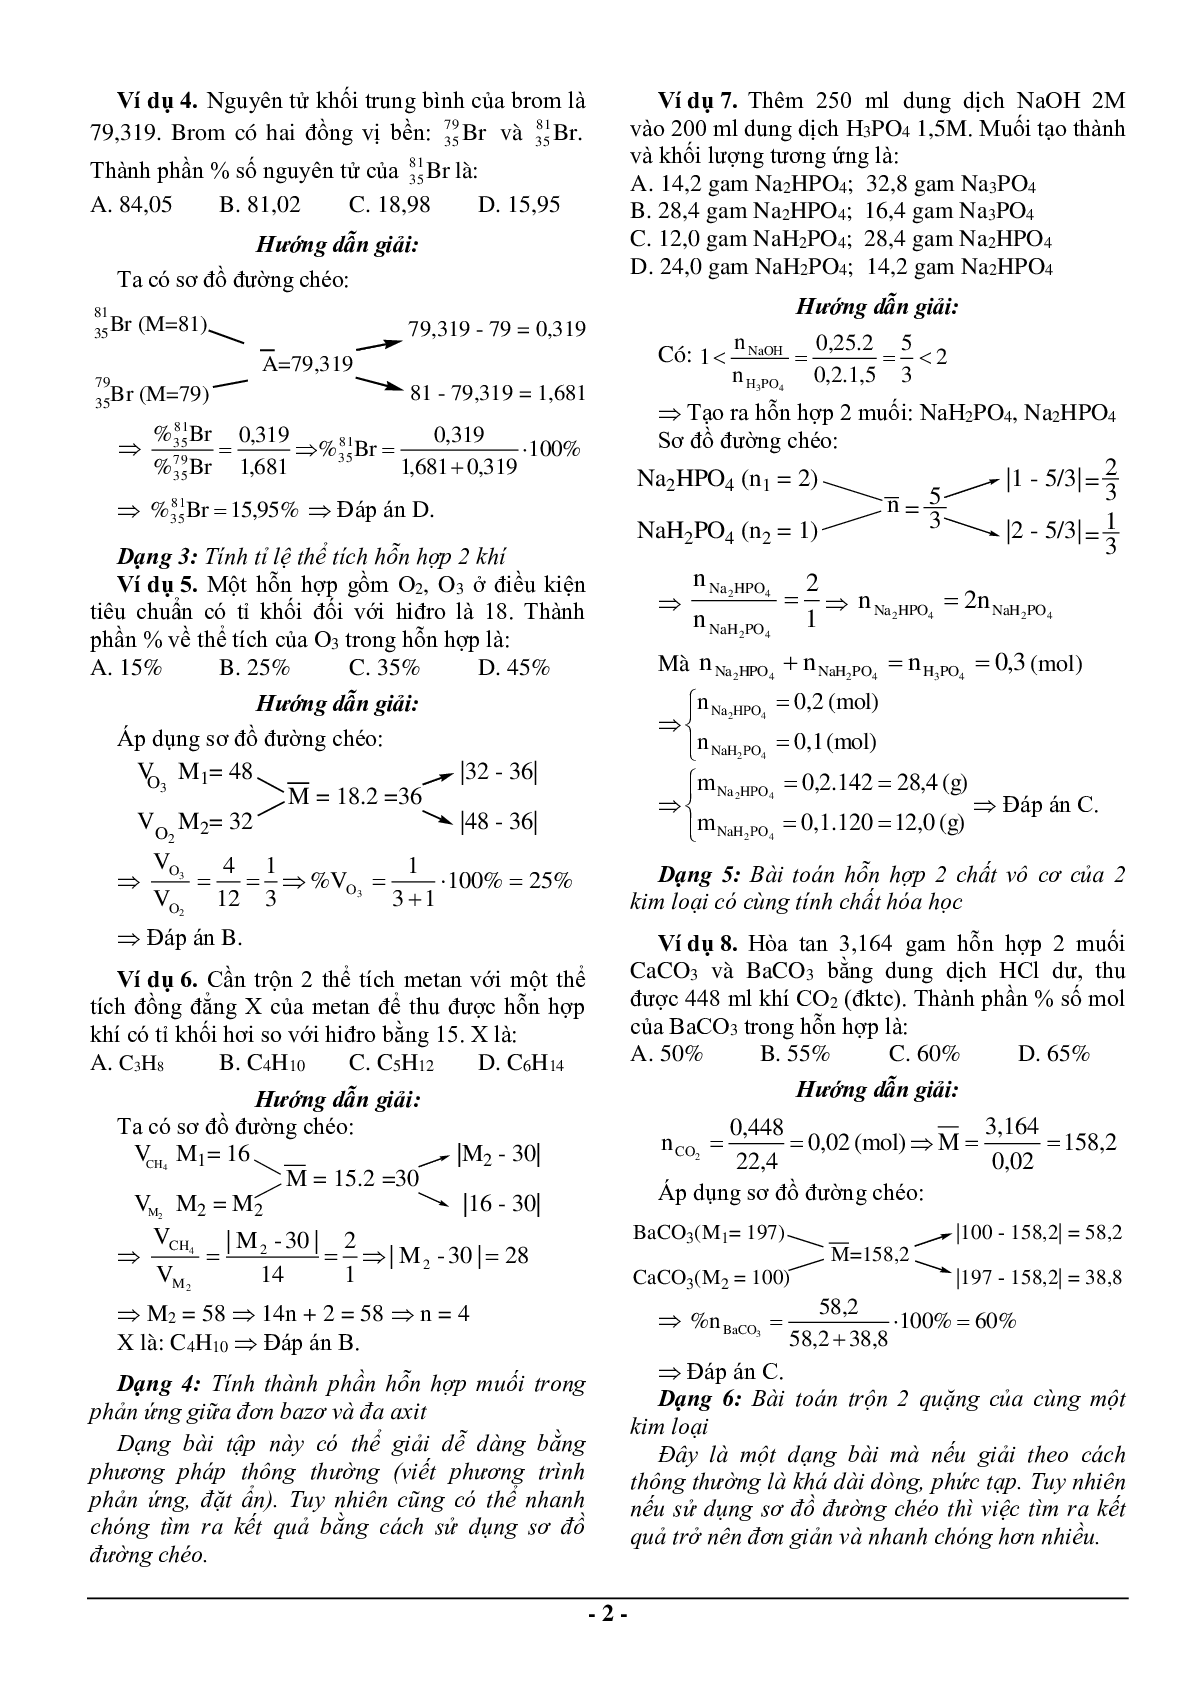 Bài tập hóa học sử dụng phương pháp sơ đồ đường chéo có đáp án (trang 2)